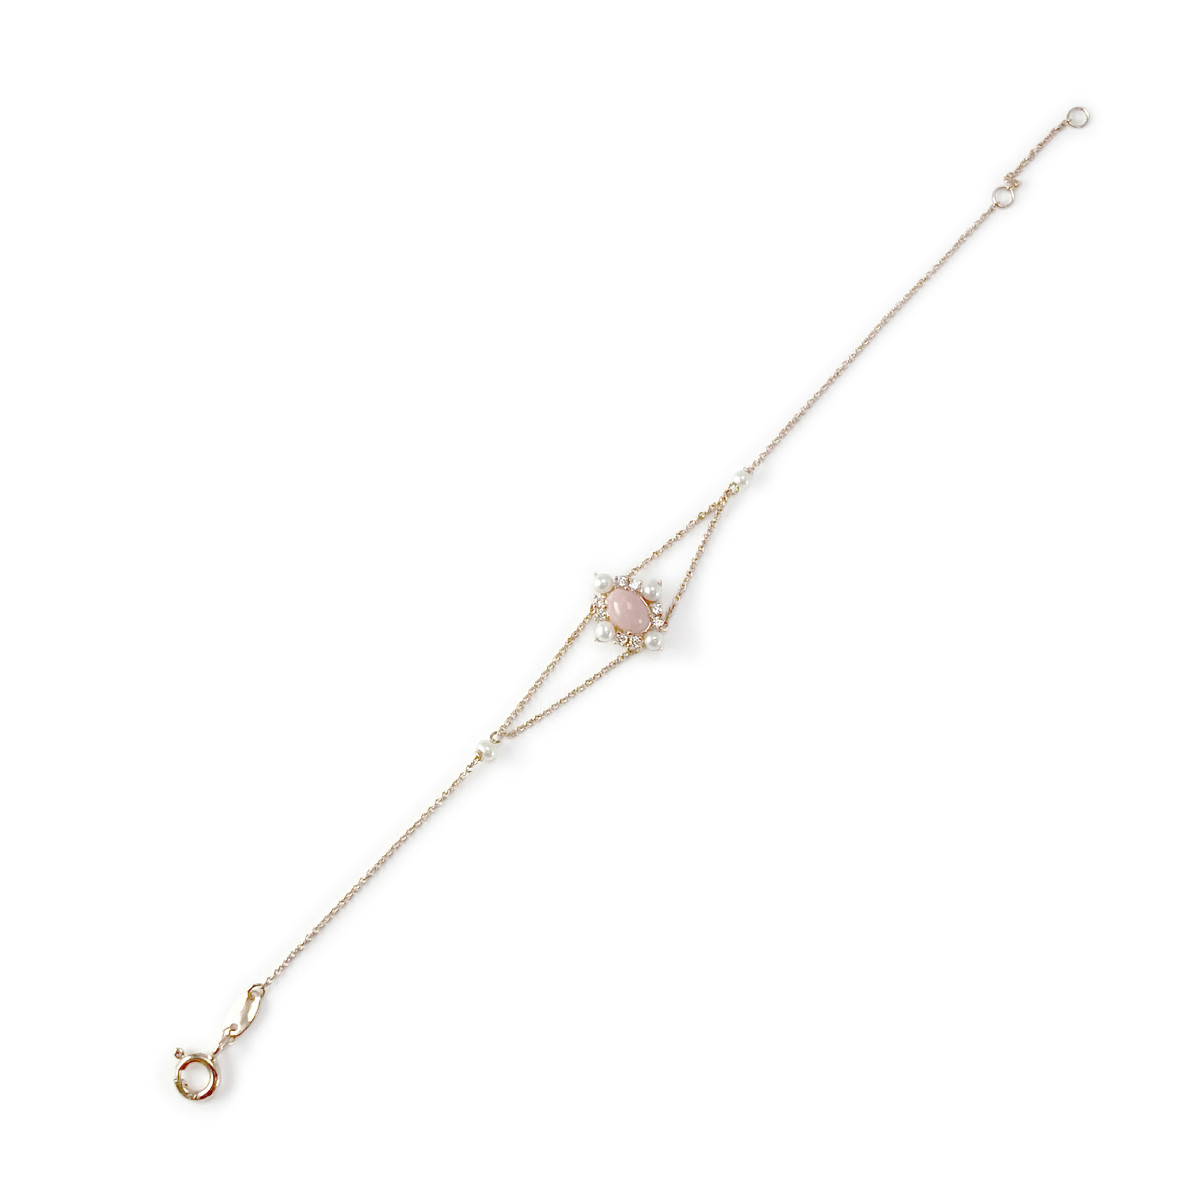 Bracelet d'occasion or 375 rose opale zirconia et perle - vue 2